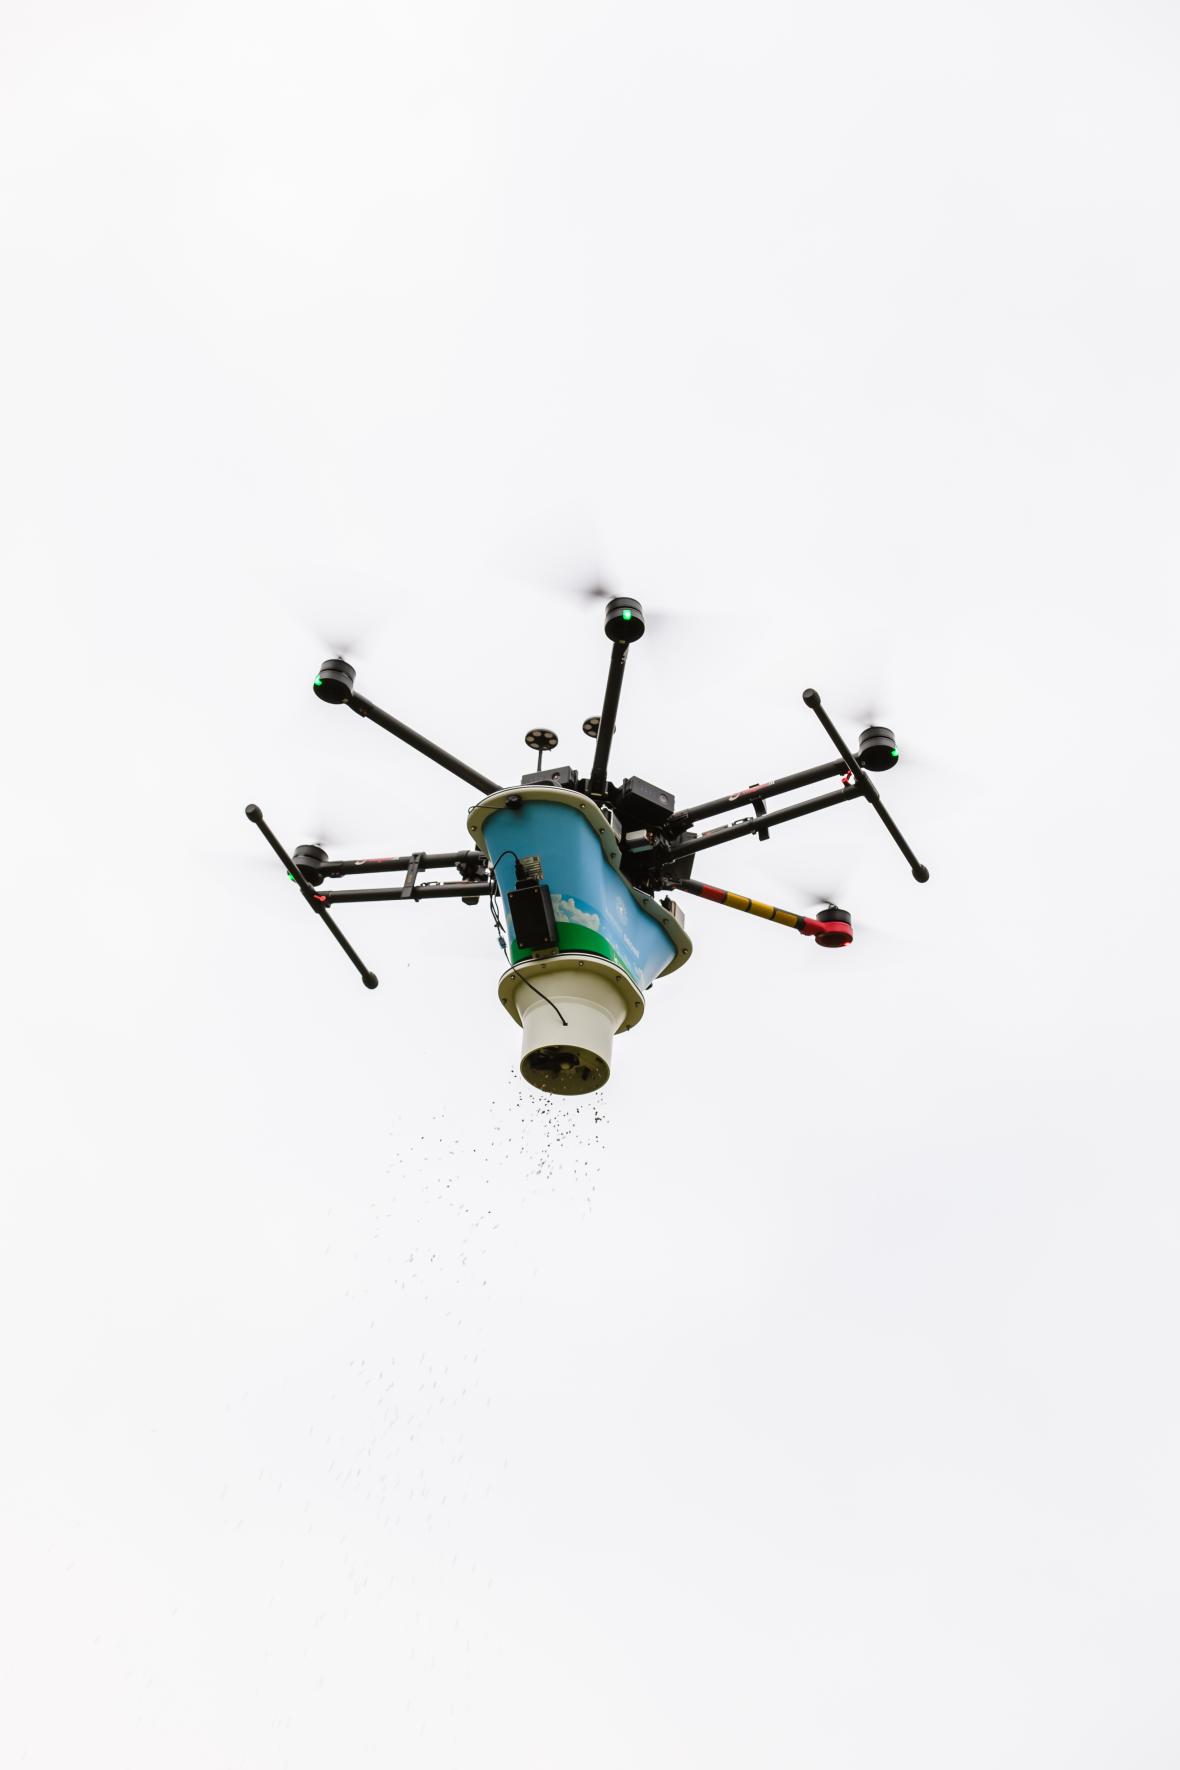 Eikenprocessierups bestrijden met drone